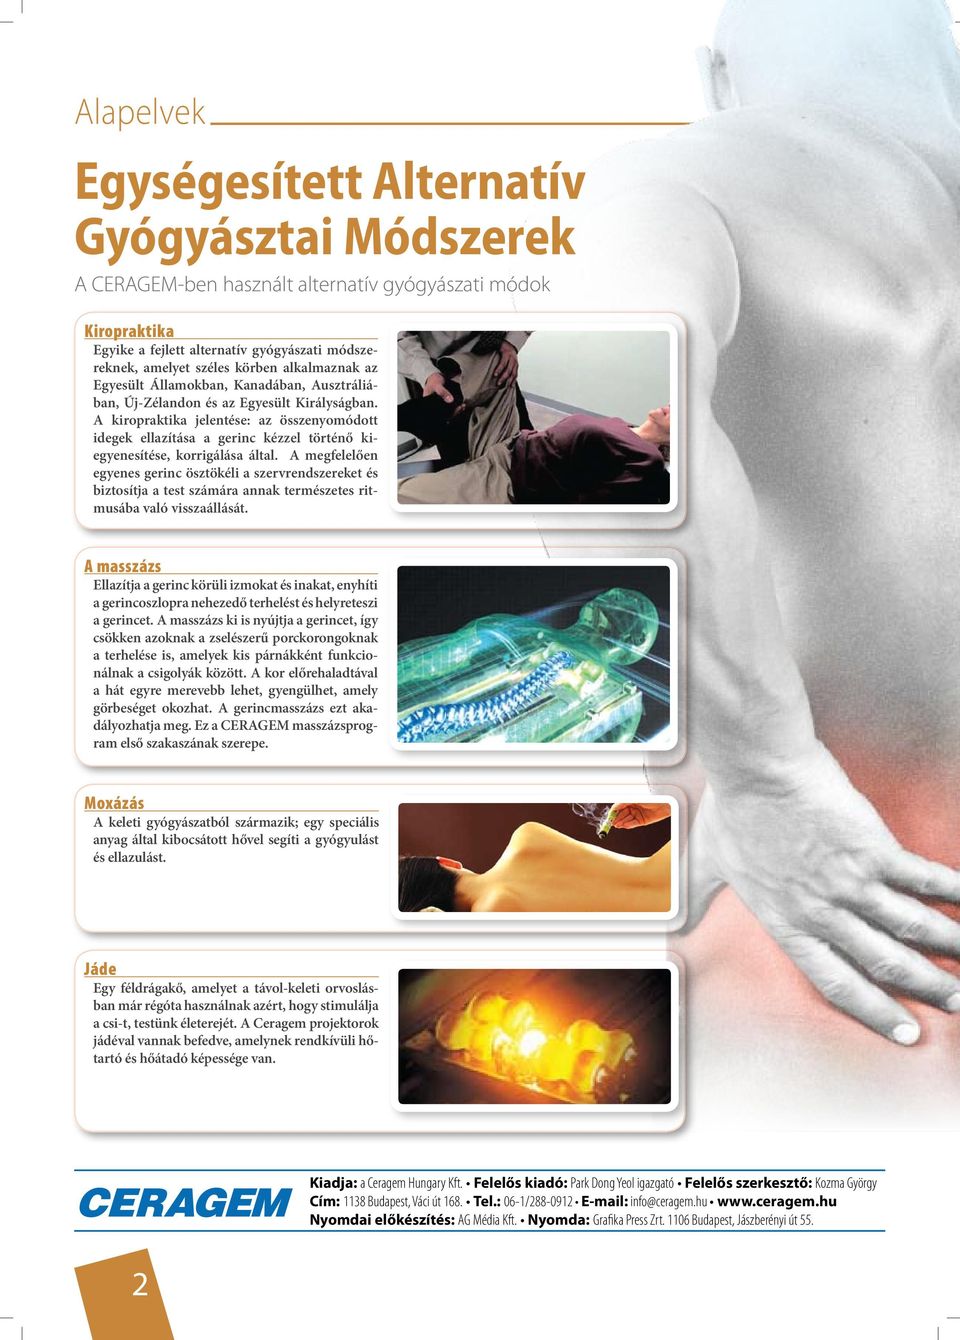 A kiropraktika jelentése: az összenyomódott idegek ellazítása a gerinc kézzel történő kiegyenesítése, korrigálása által.